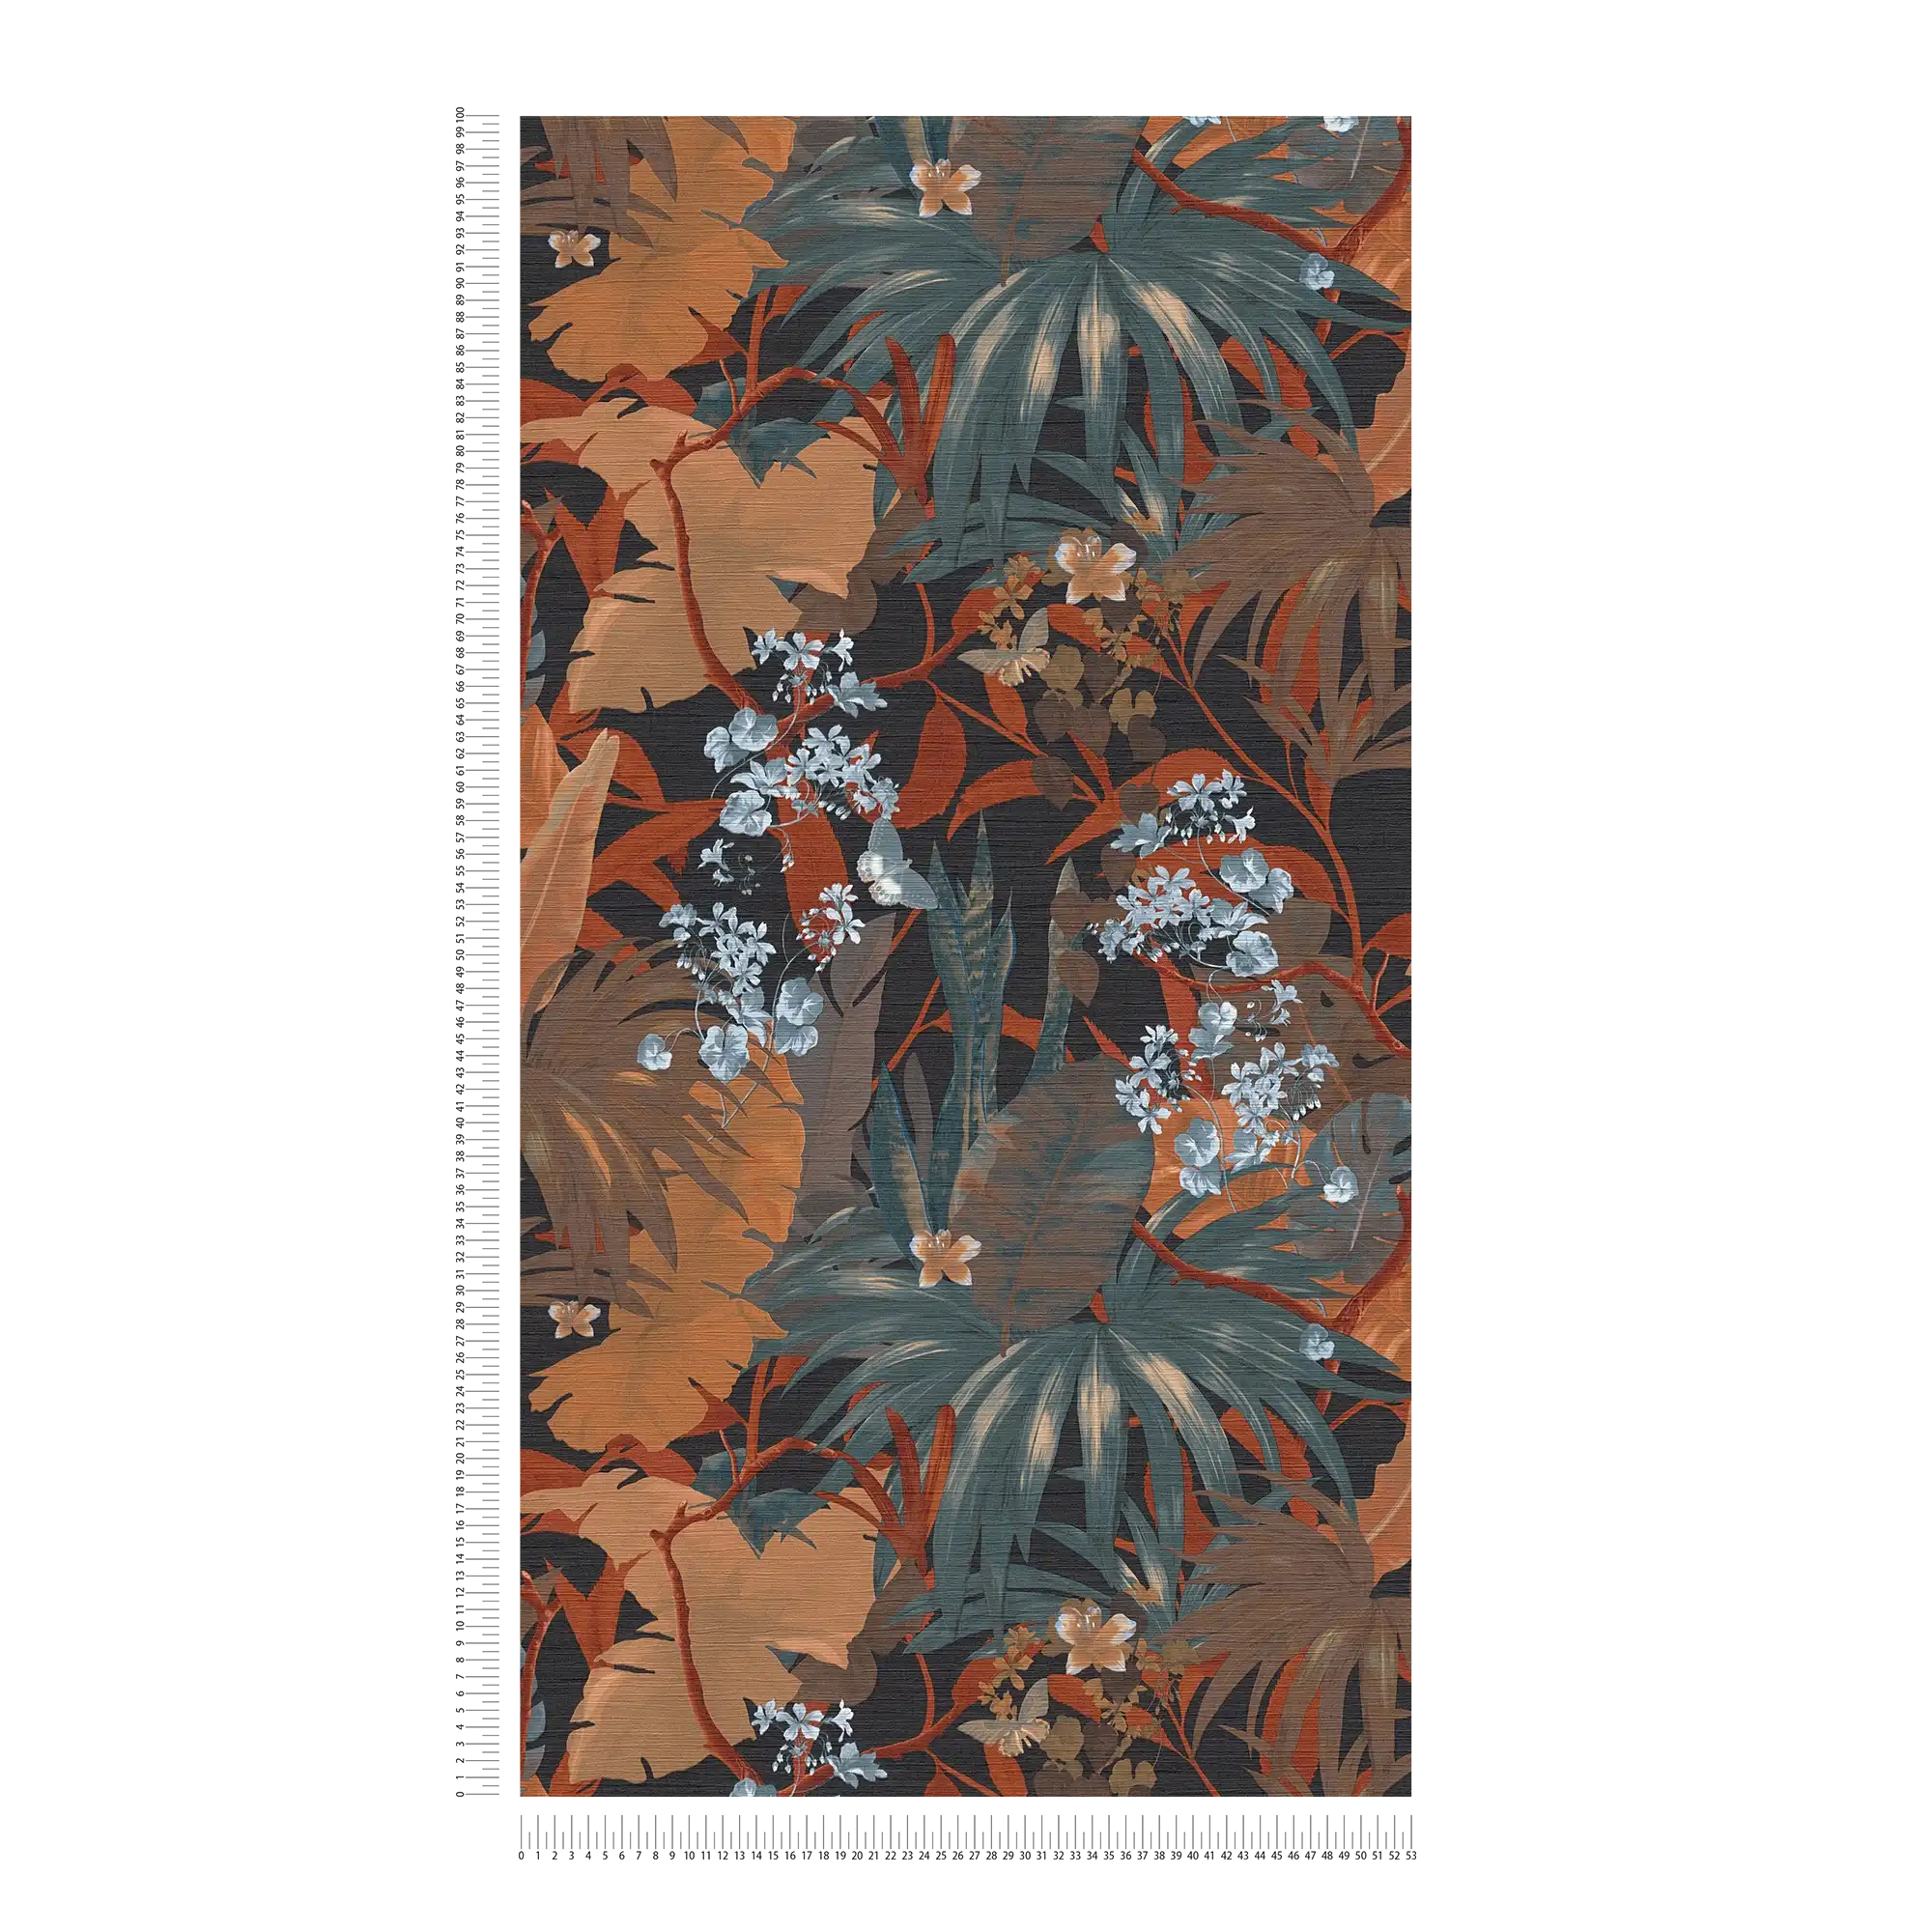             Jungle behang met bladmotief - oranje, blauw
        